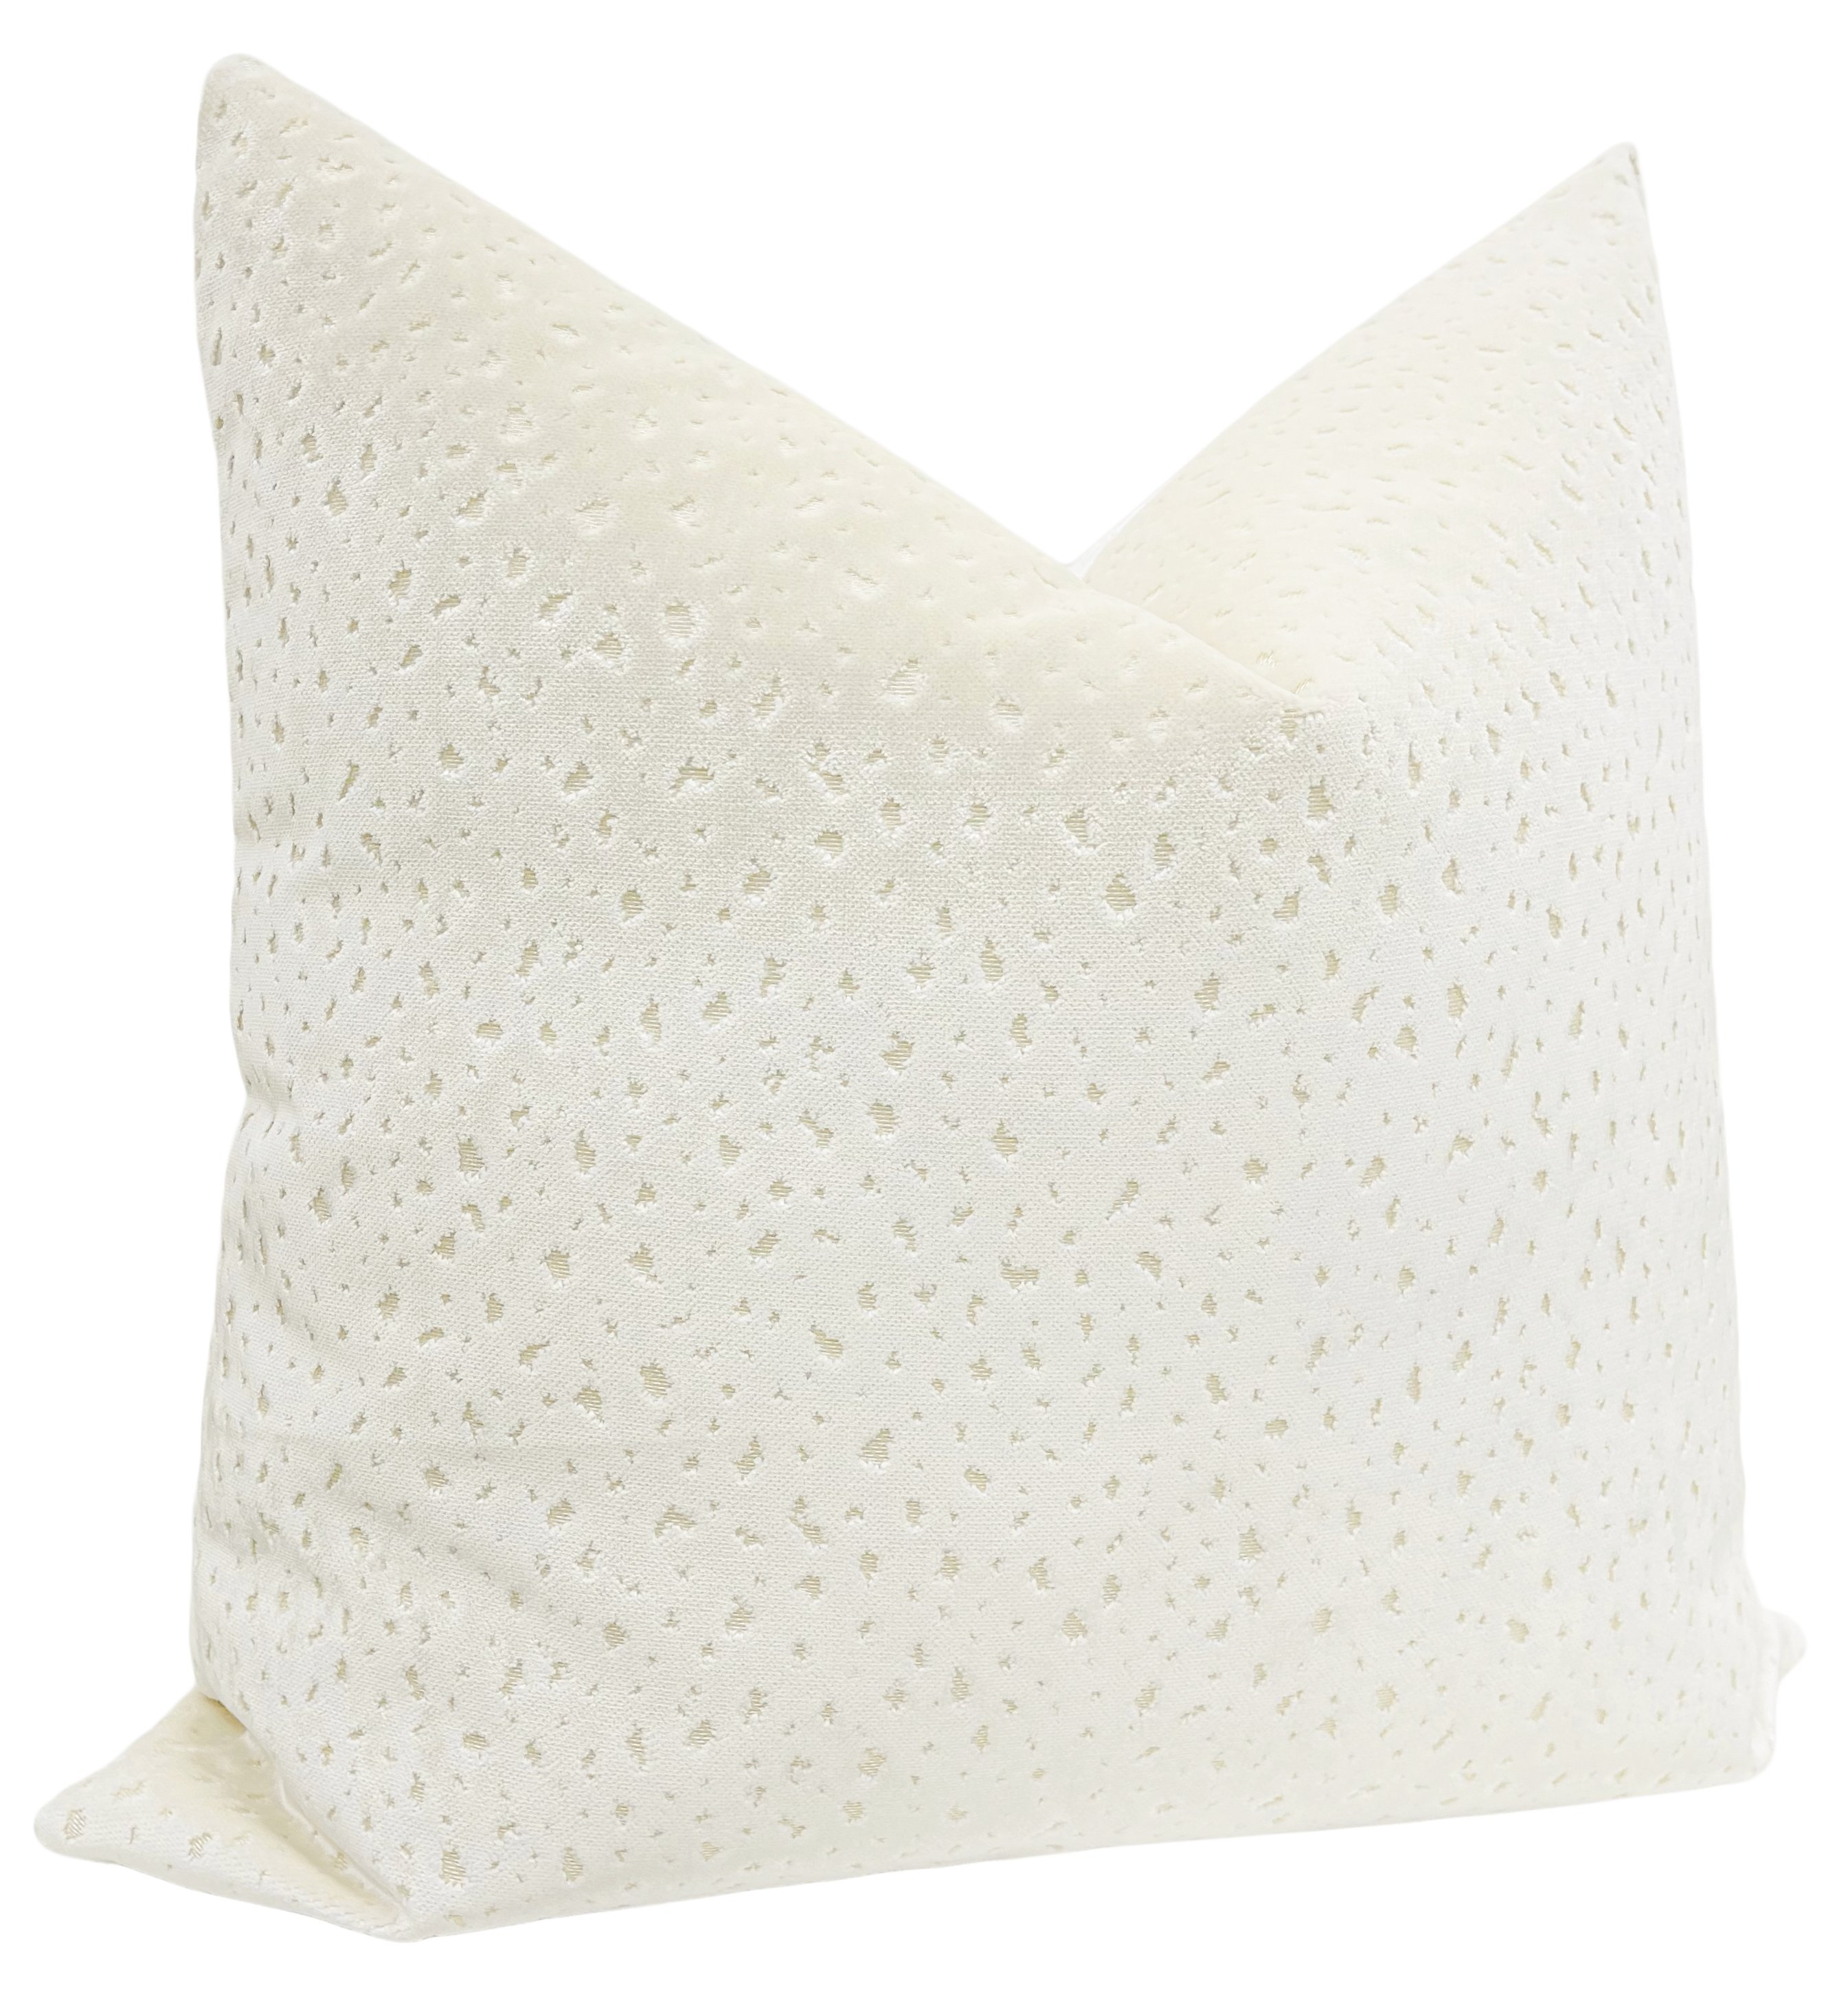 Antelope Cut Velvet Pillow Cover, Alabaster, 18" x 18" - Image 2